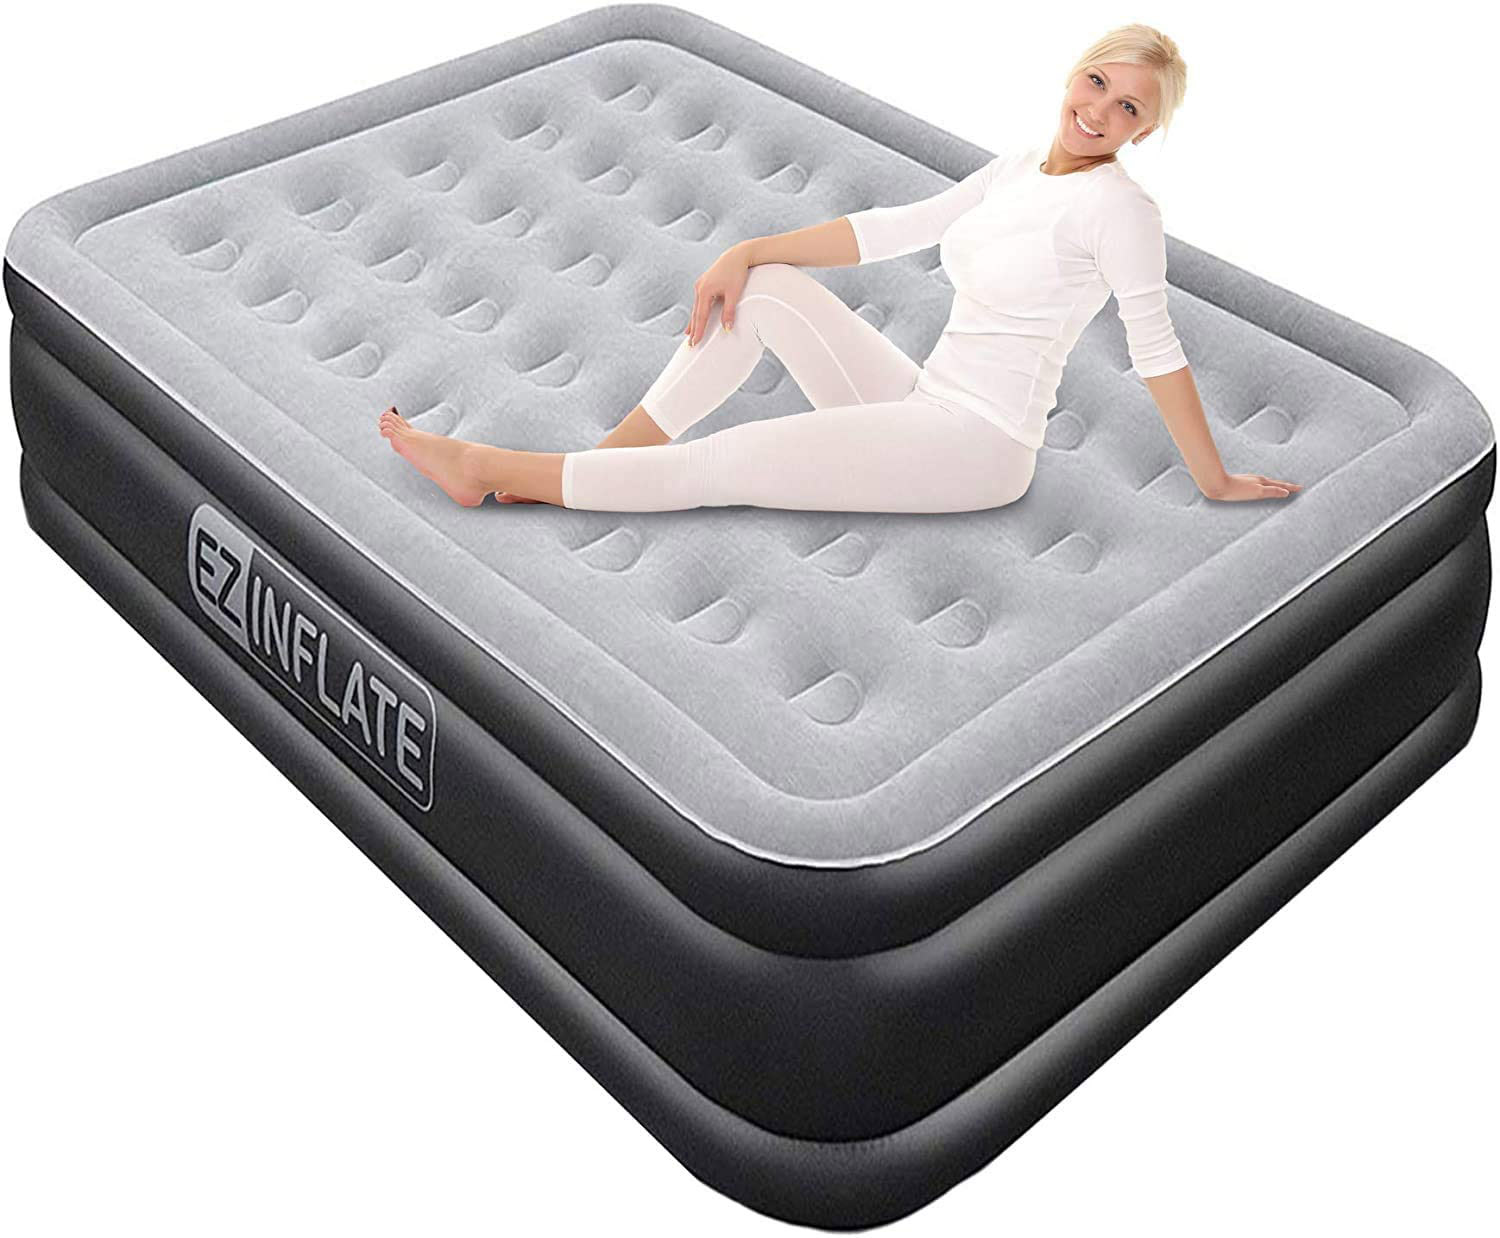 firm air mattress camping reddit